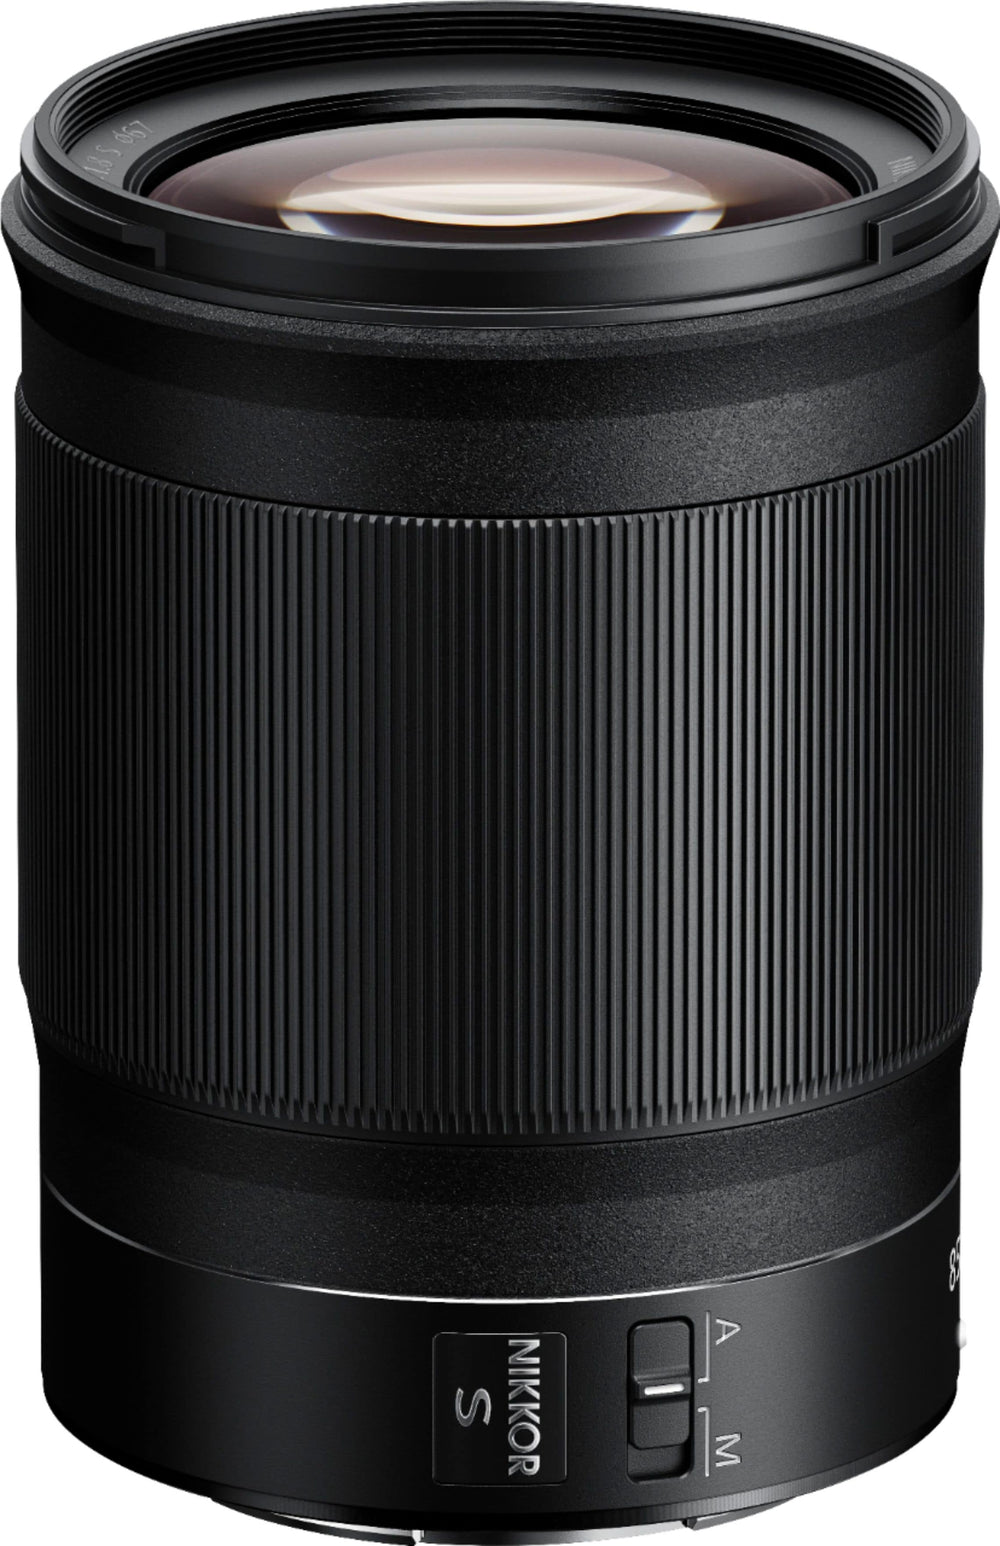 NIKKOR Z 85mm f/1.8 S Telephoto Lens for Nikon Z Cameras - Black_1